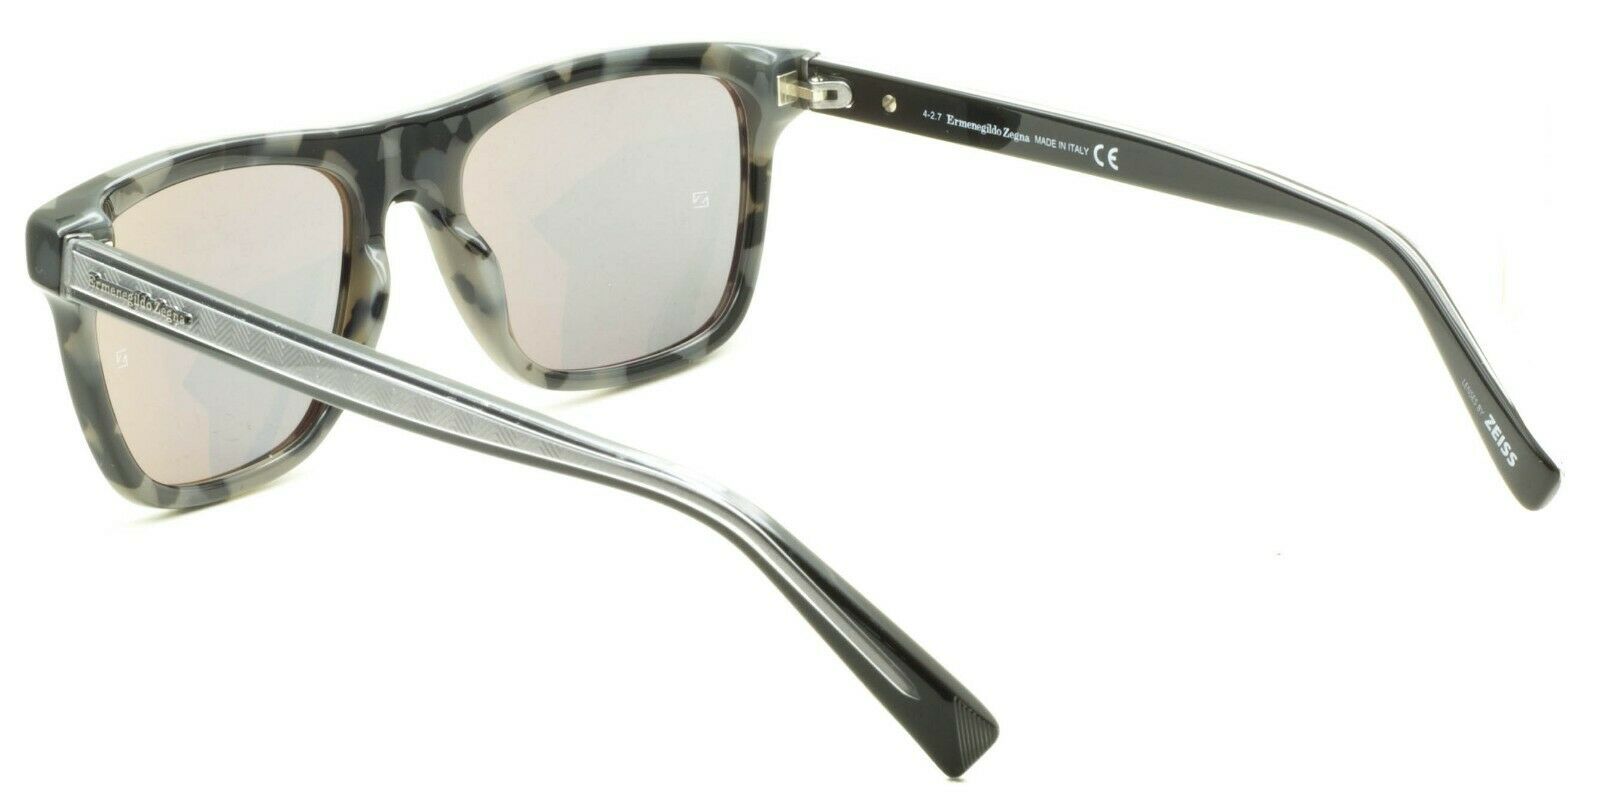 Ermenegildo Zegna EZ 0094 55C Sunglasses Shades Glasses 100% UV New BNIB - Italy